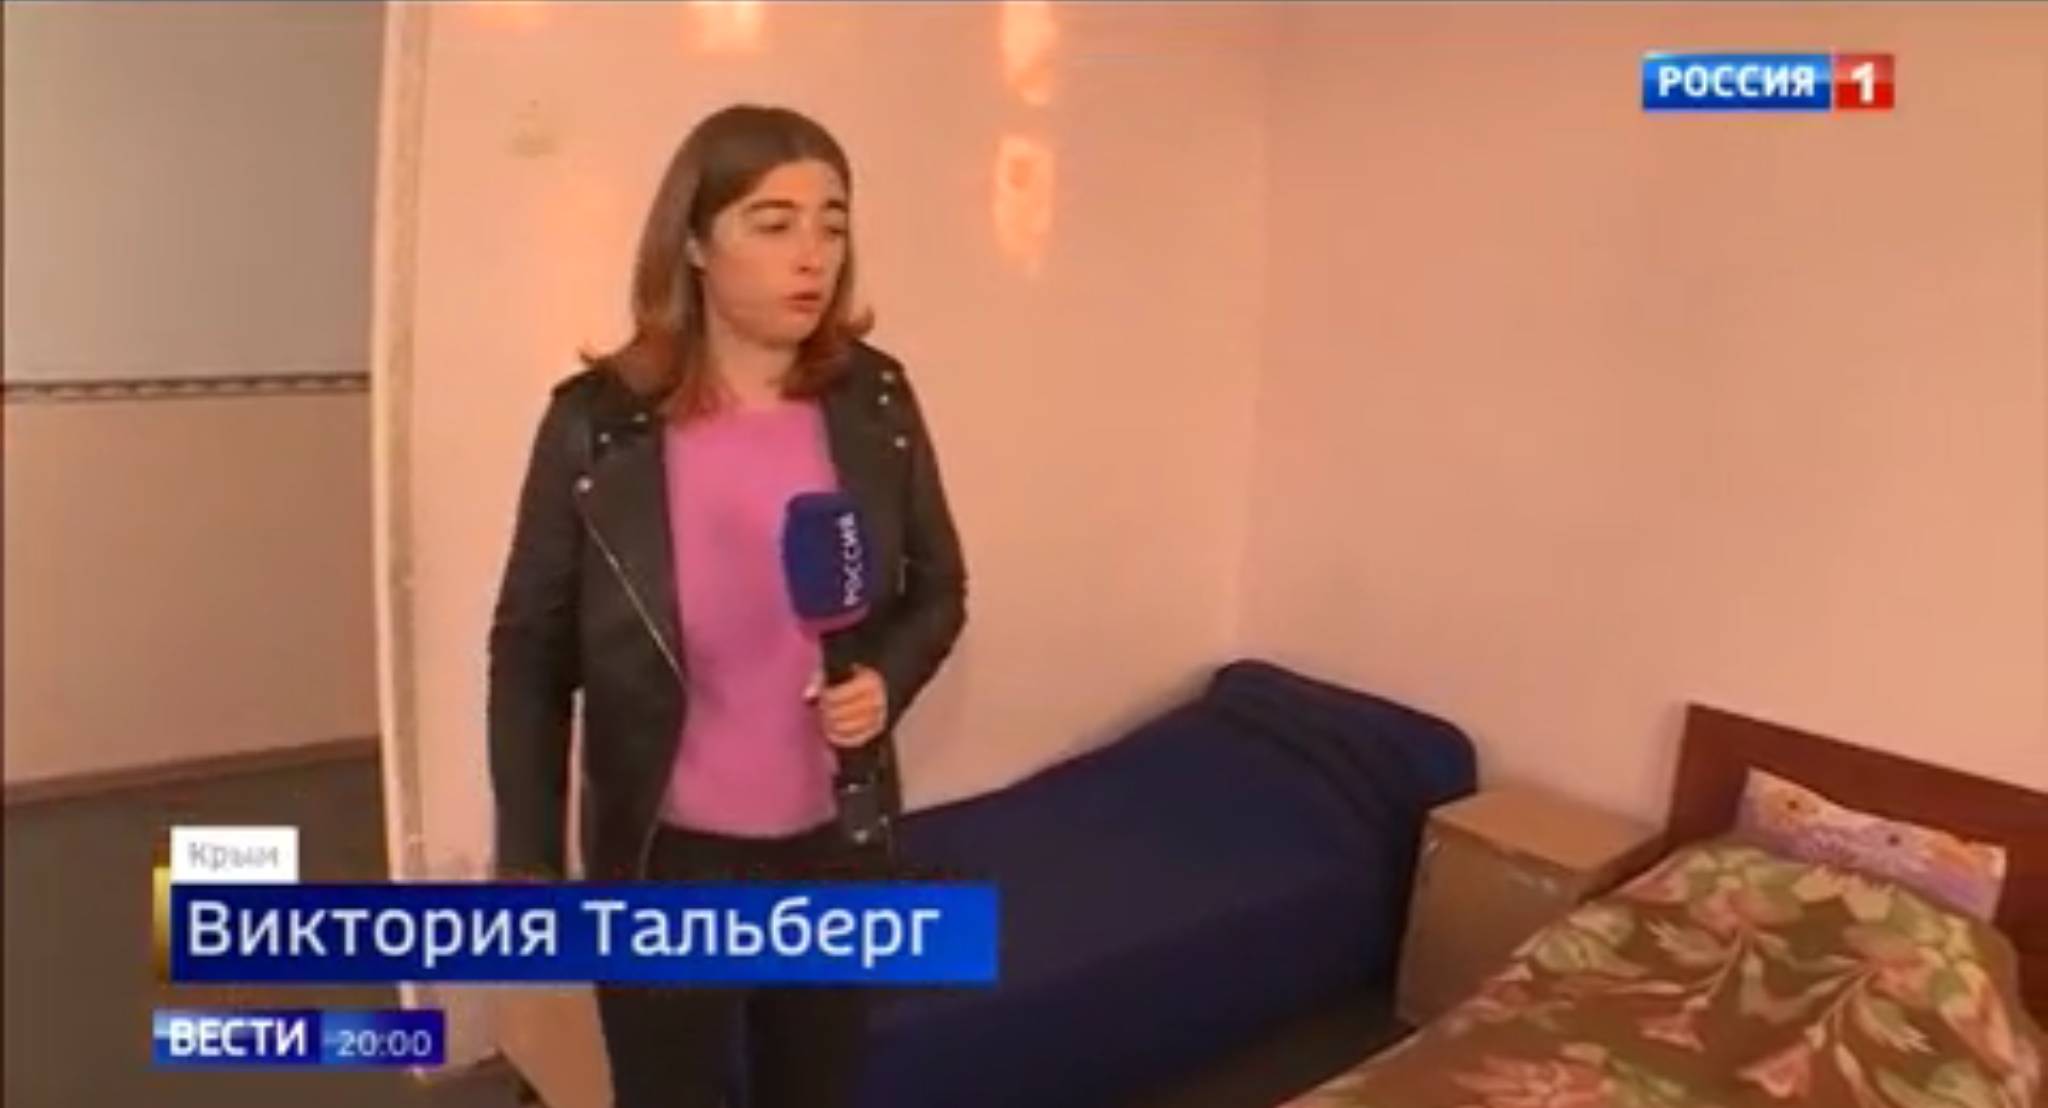 Kobieta z mikrofonem pokazuje pusty pokój z kilkoma łóżkami